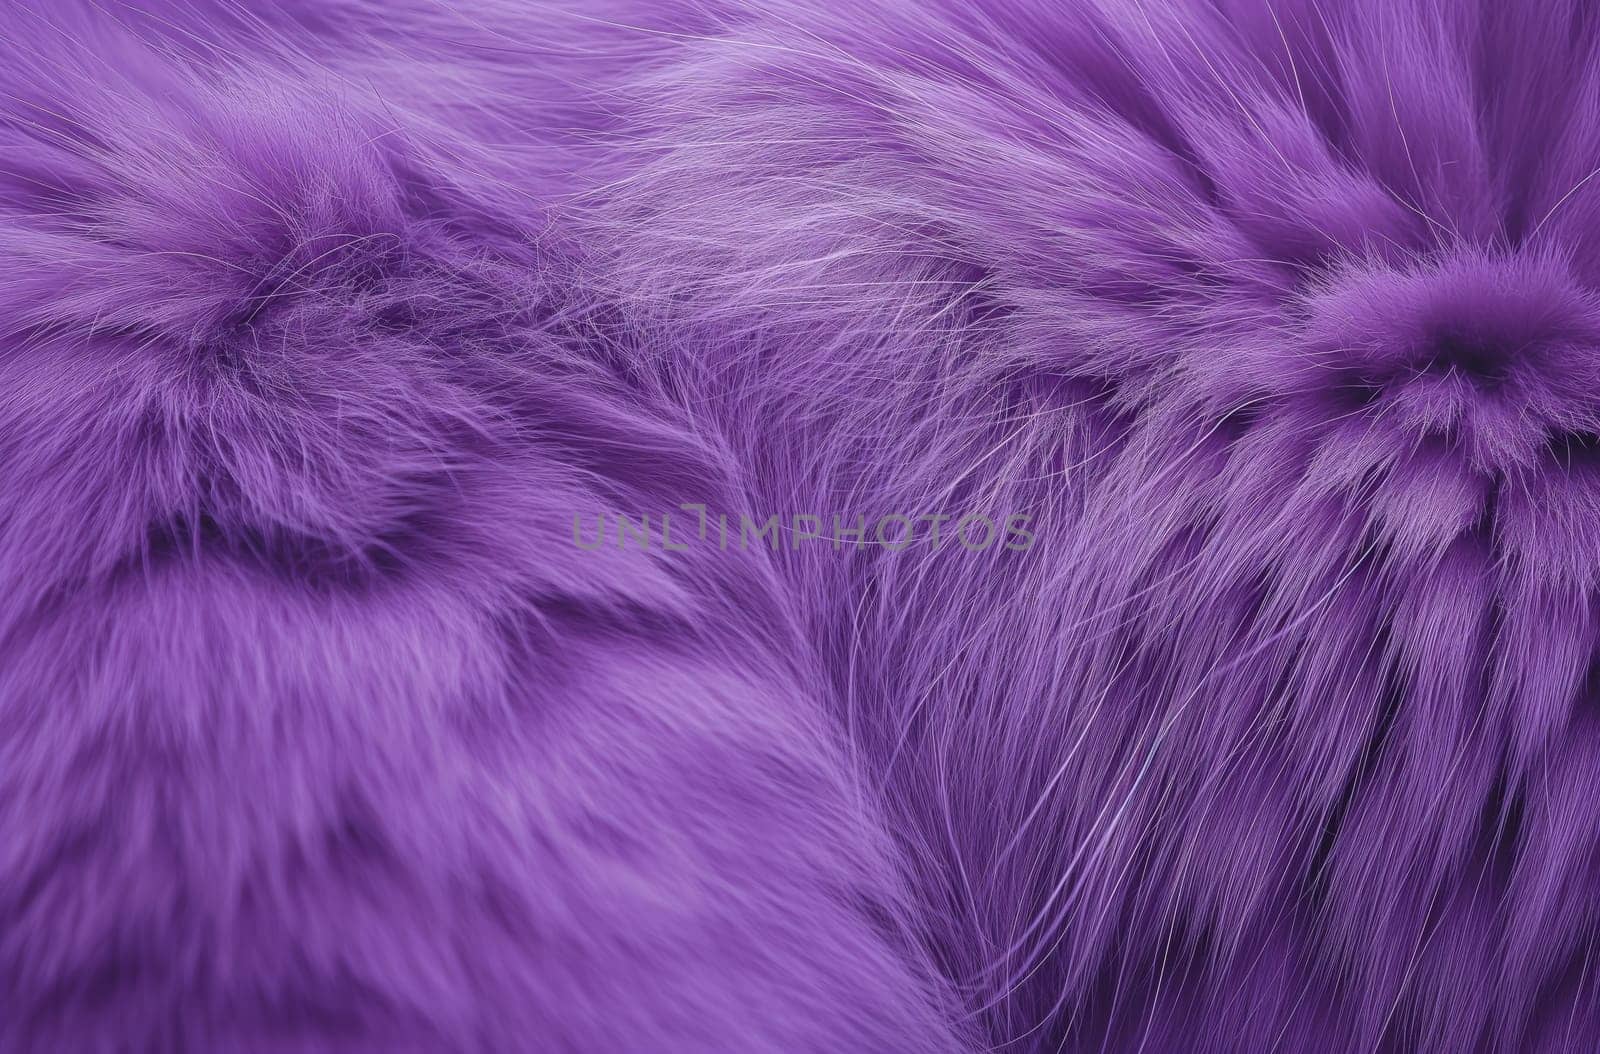 Detailed purple fur texture by gcm